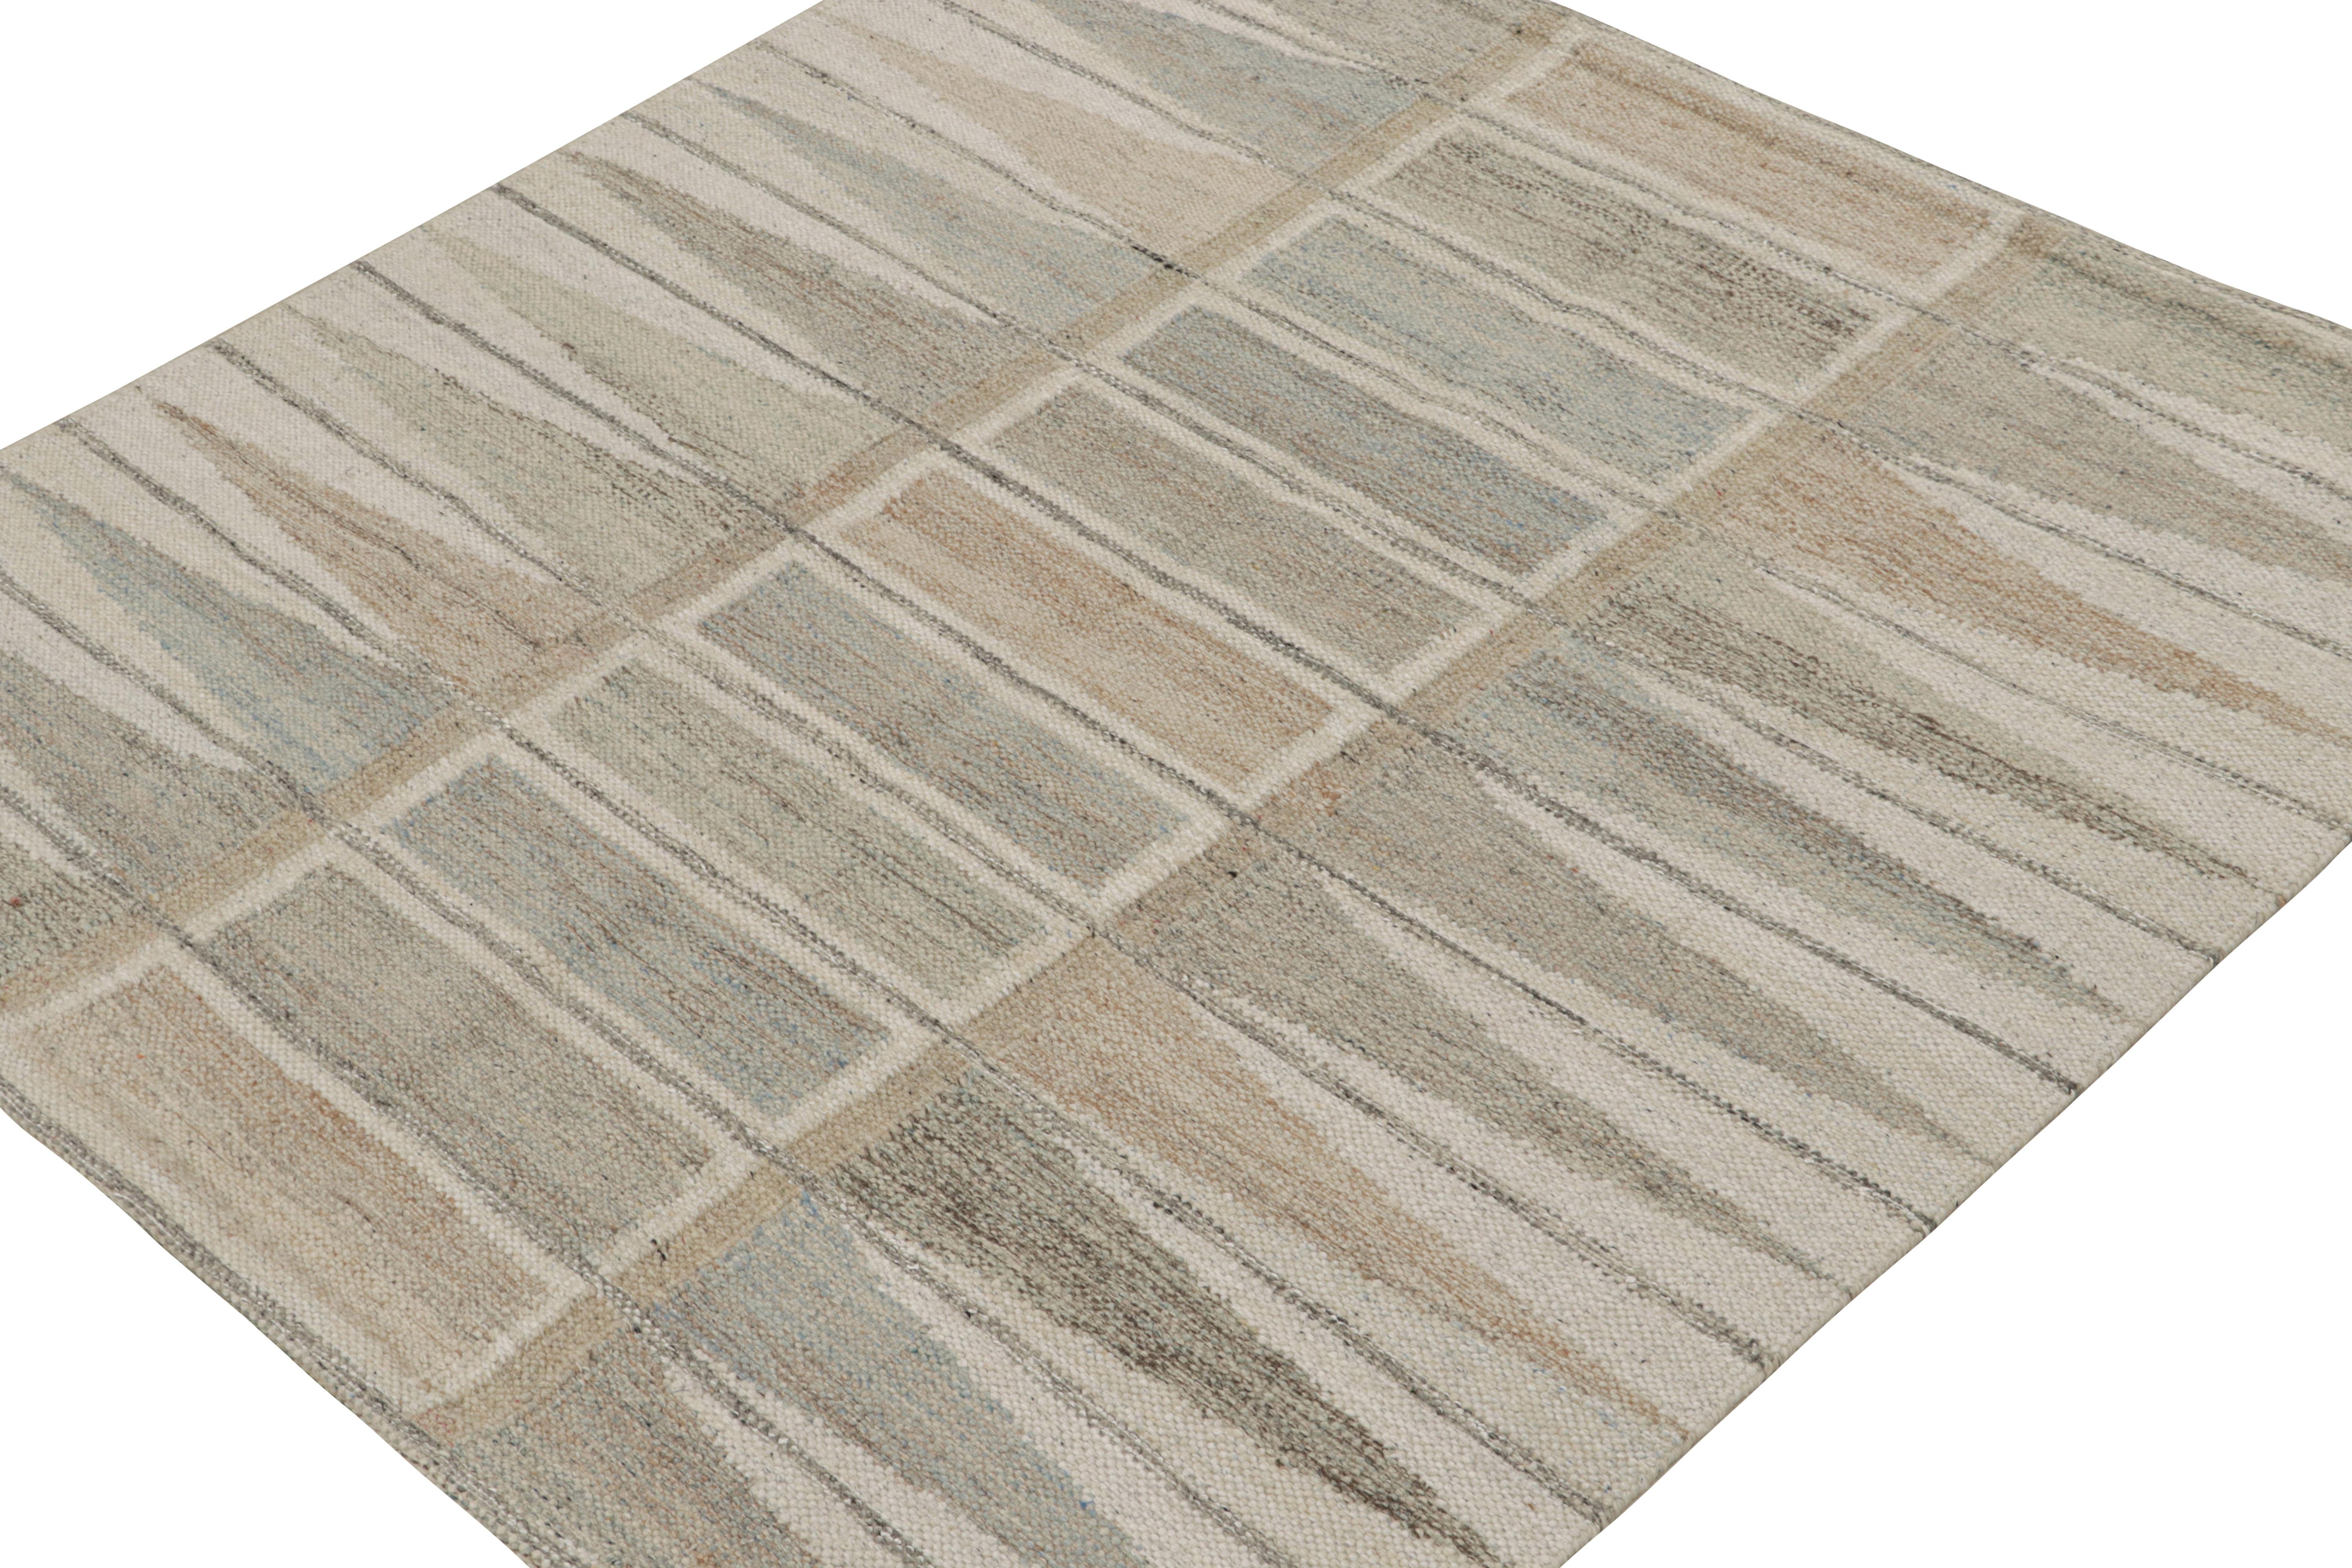 Dieser quadratische Teppich im Format 6x6 repräsentiert die Flachgewebe im schwedischen Stil der skandinavischen Teppichkollektion von Rug & Kilim.

Über das Design: 

Diese Fotos zeigen einen 6x6 Kilim-Teppich aus dieser Kollektion, handgewebt aus